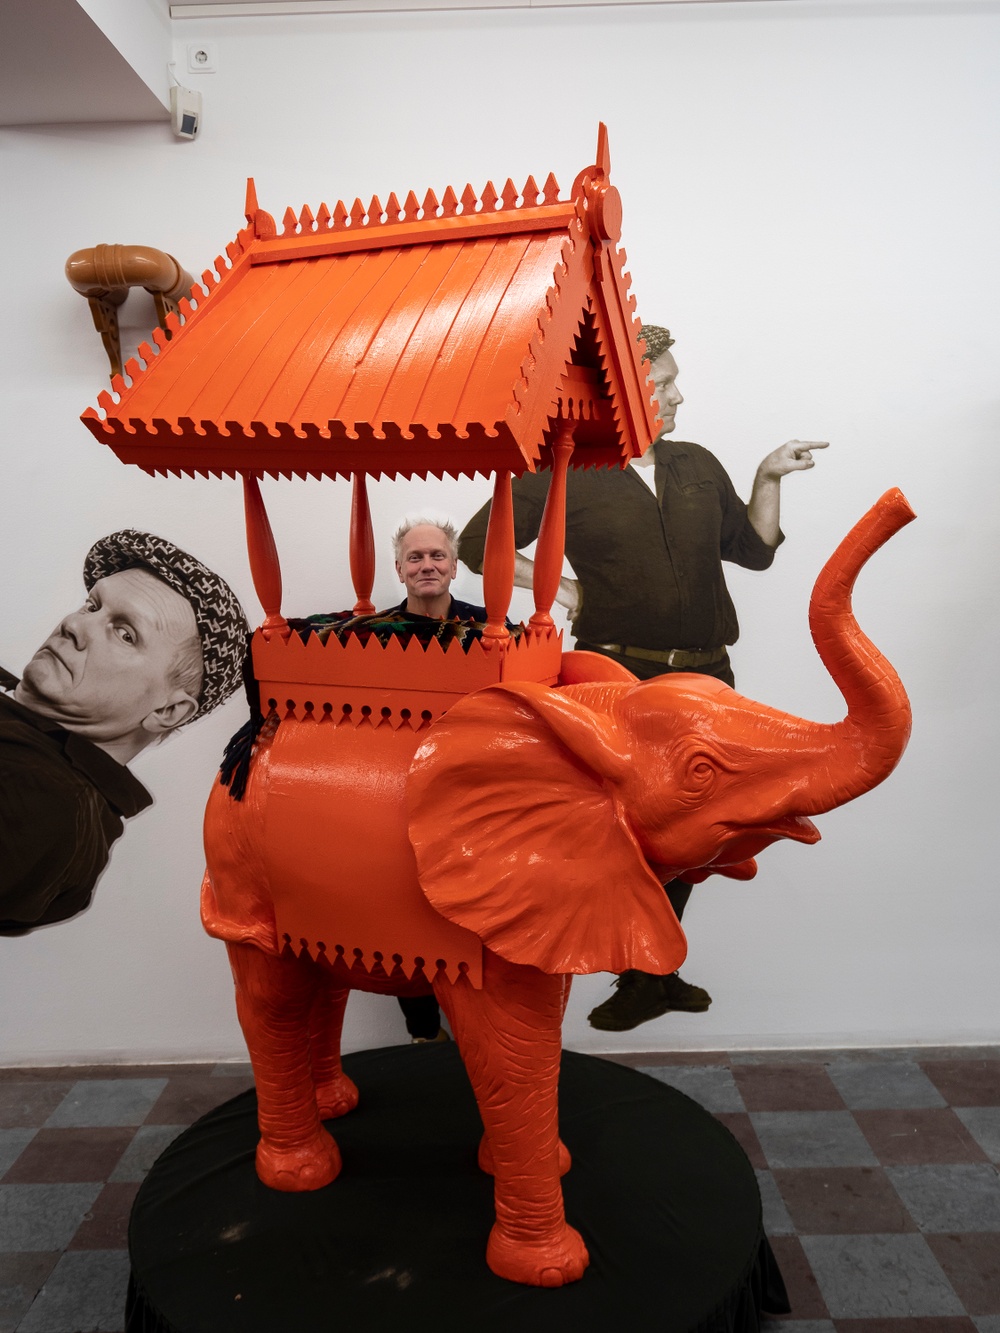 Konstnären Peter Johansson med "Elefanten i rummet" i samband med utställningen Souvenir på Wetterling Gallery i Stockholm.